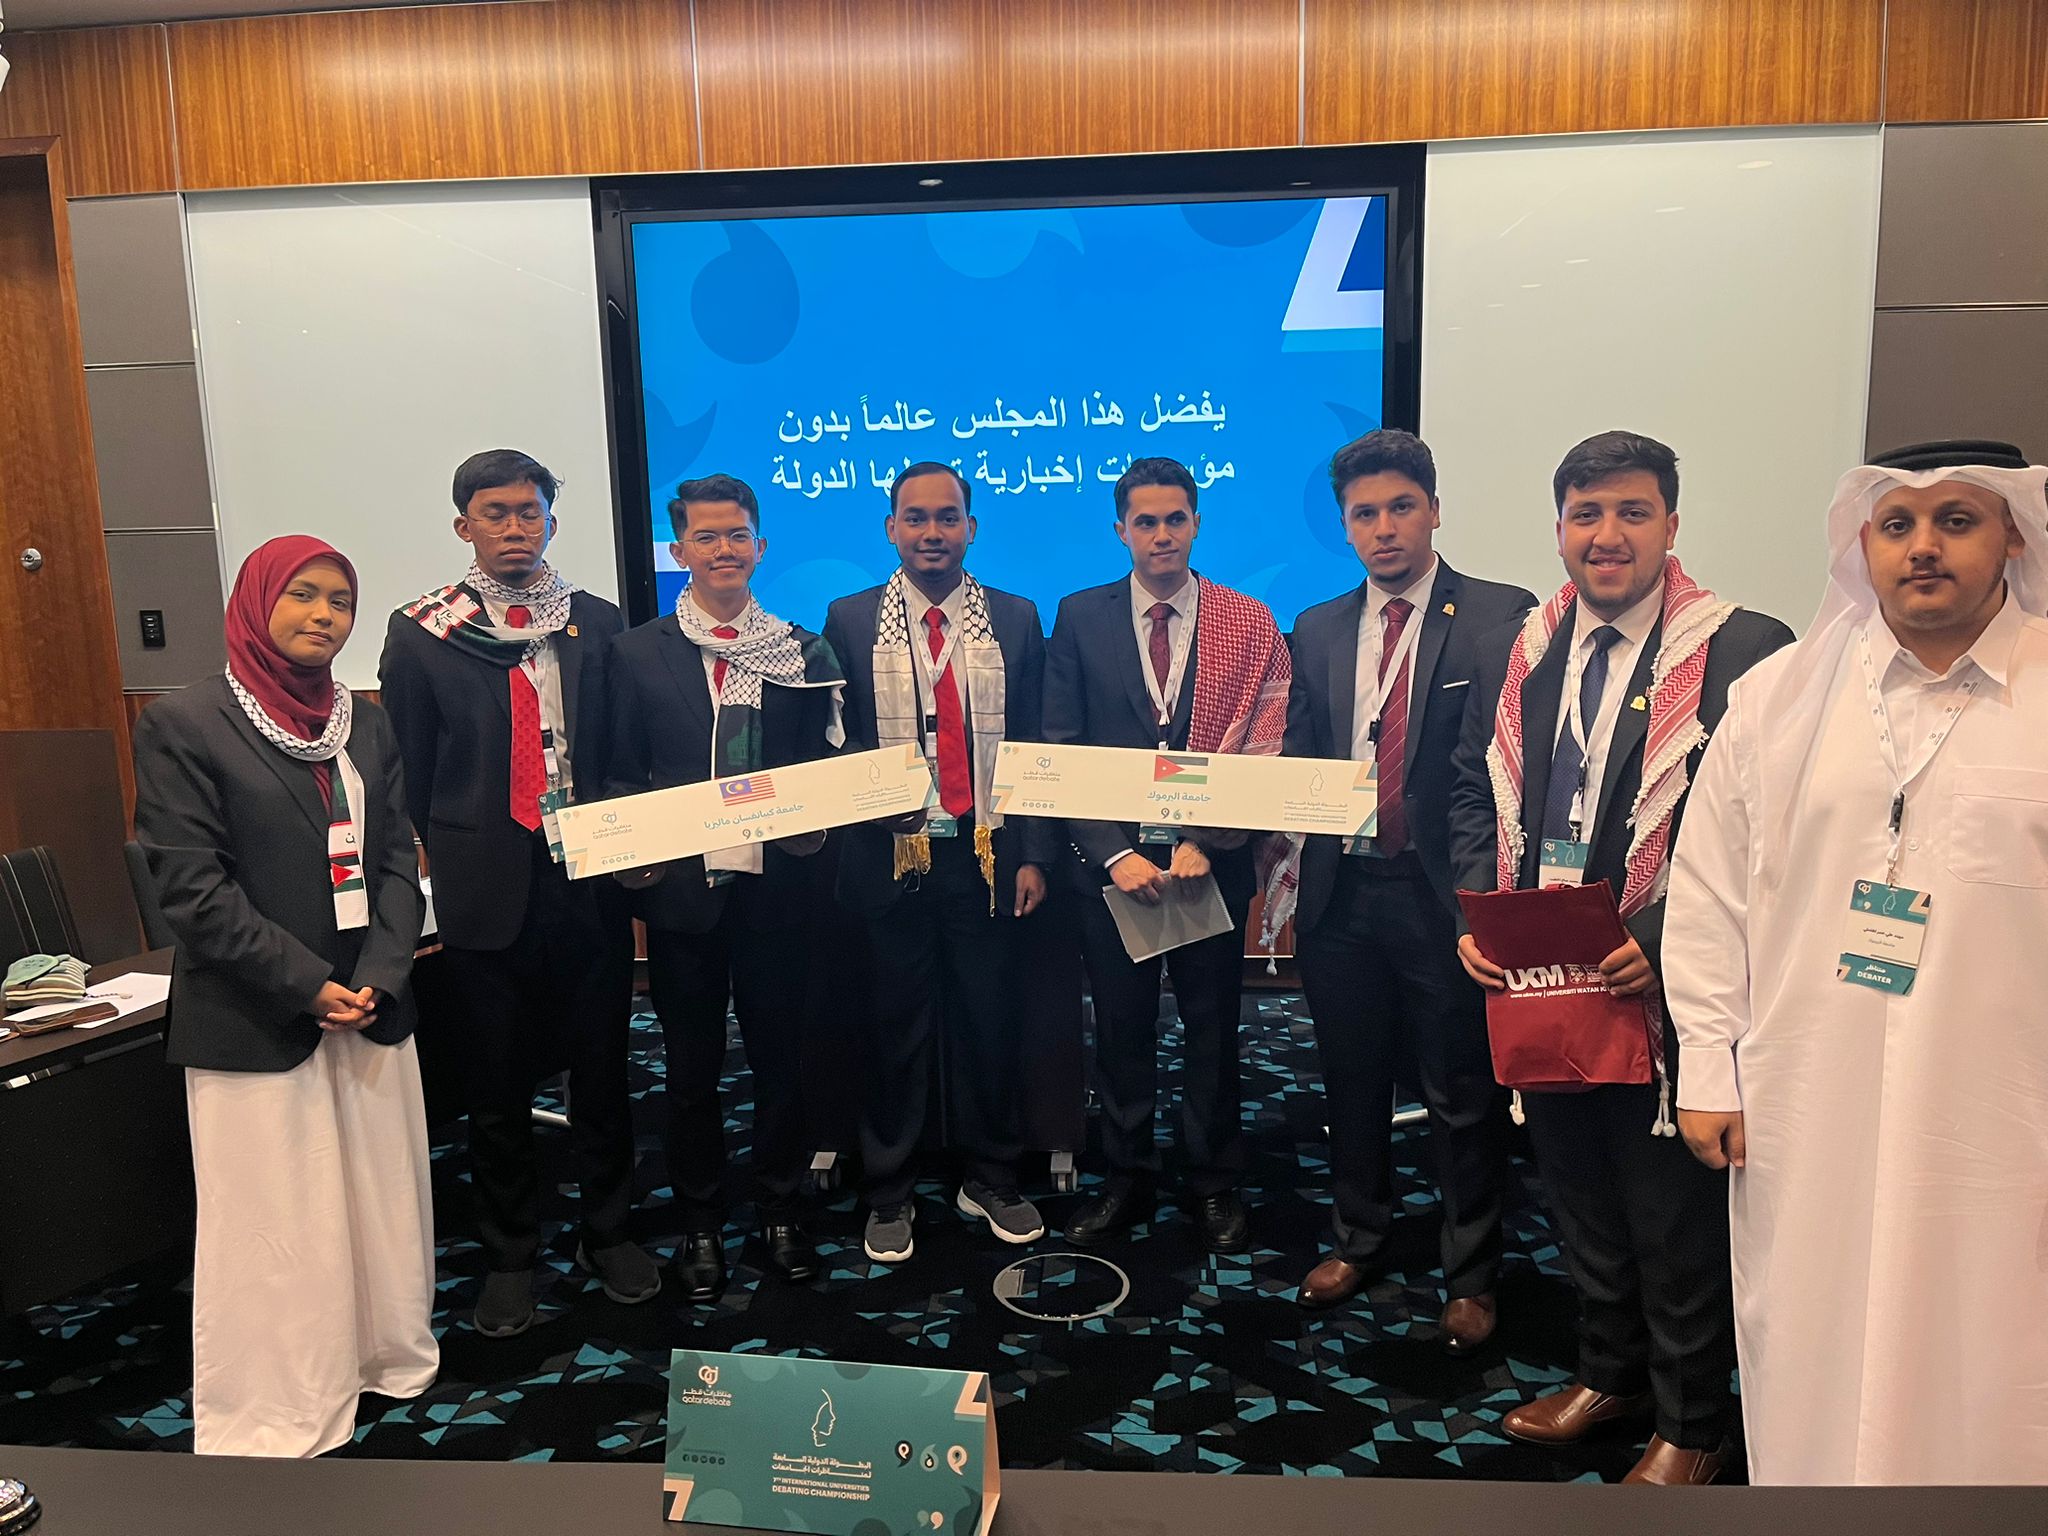 فريق اليرموك للمناظرات يشارك في البطولة الدولية السابعة لمناظرات الجامعات في اللغة العربية